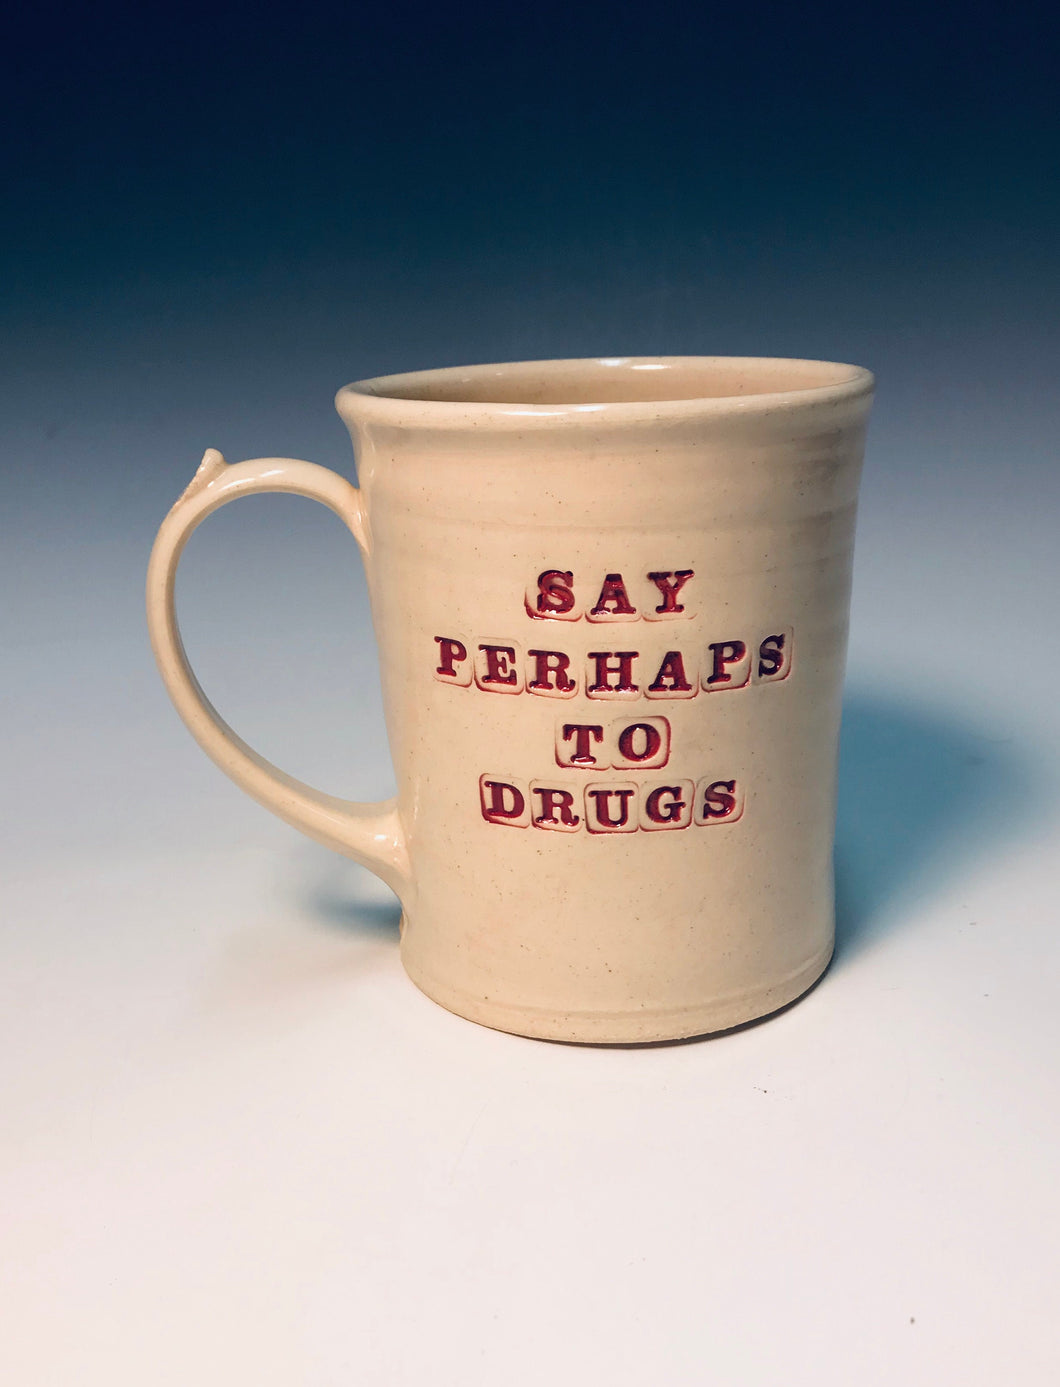 16oz Say perhaps to drugs mug